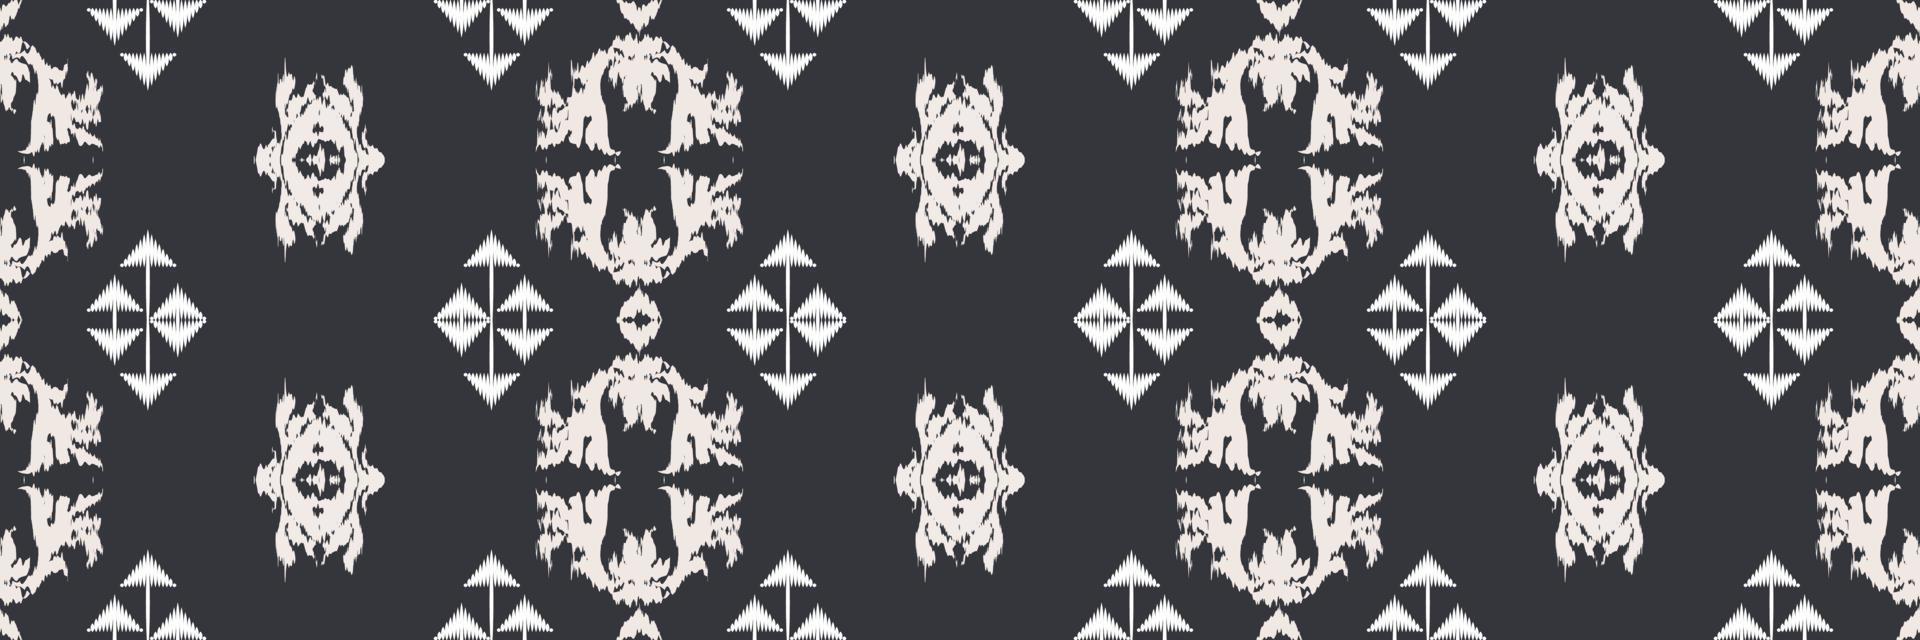 batik textil- ikat triangel sömlös mönster digital vektor design för skriva ut saree kurti borneo tyg gräns borsta symboler färgrutor eleganta